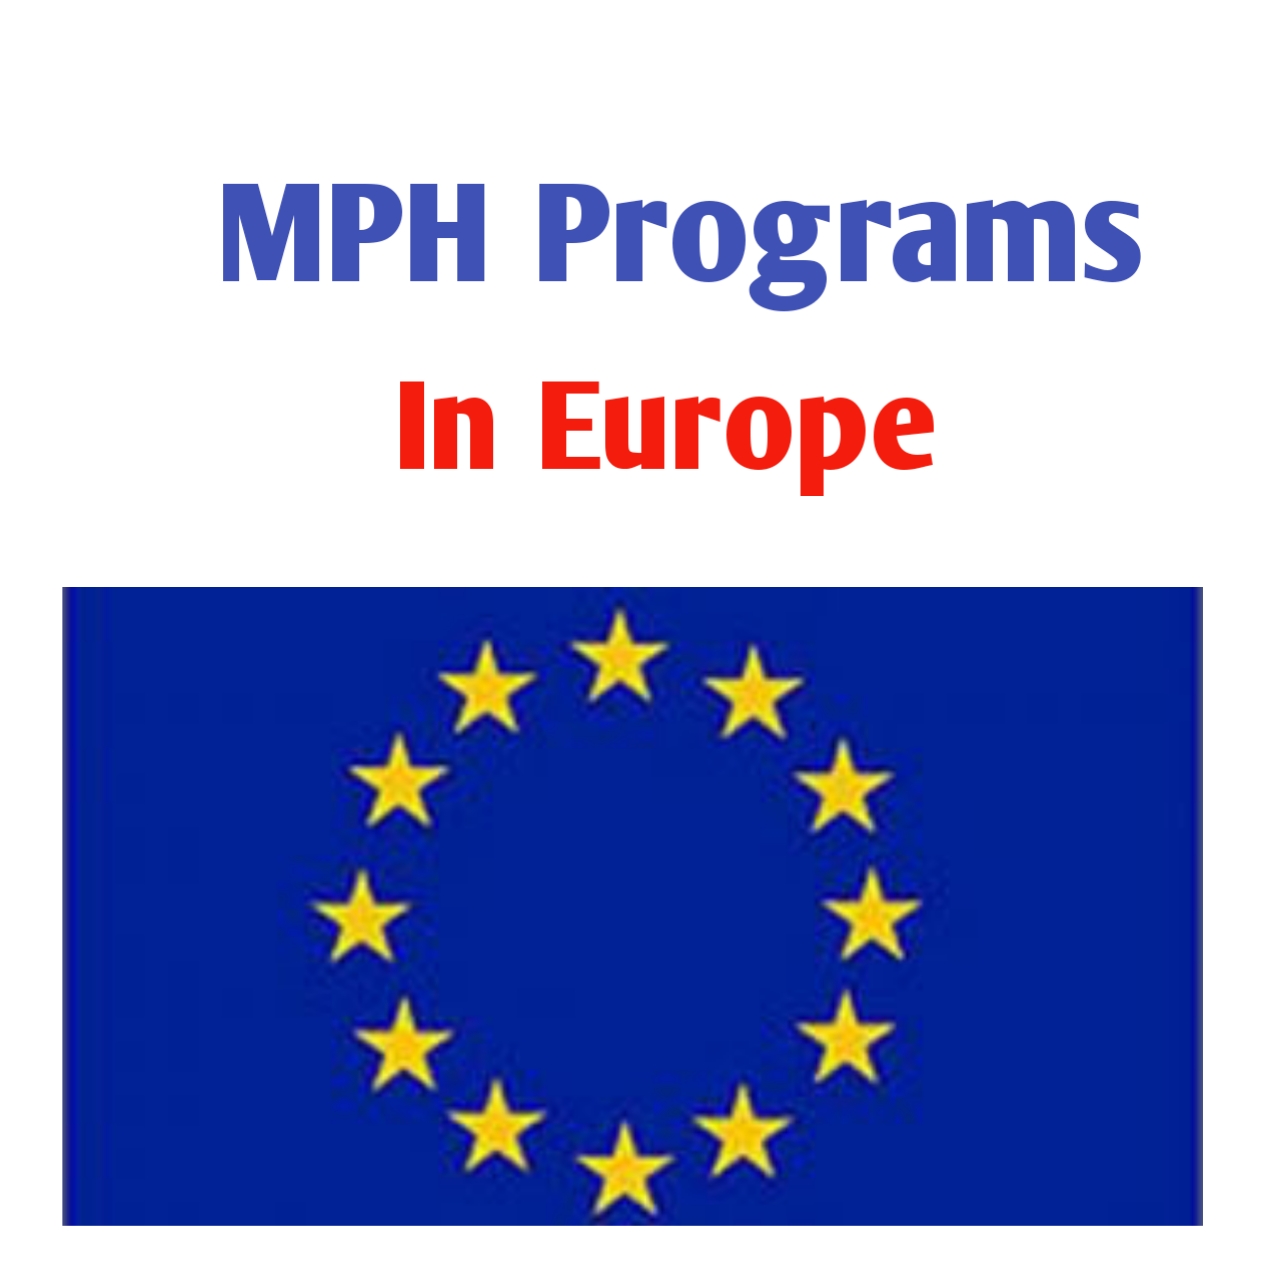 MPH Programs in Europe